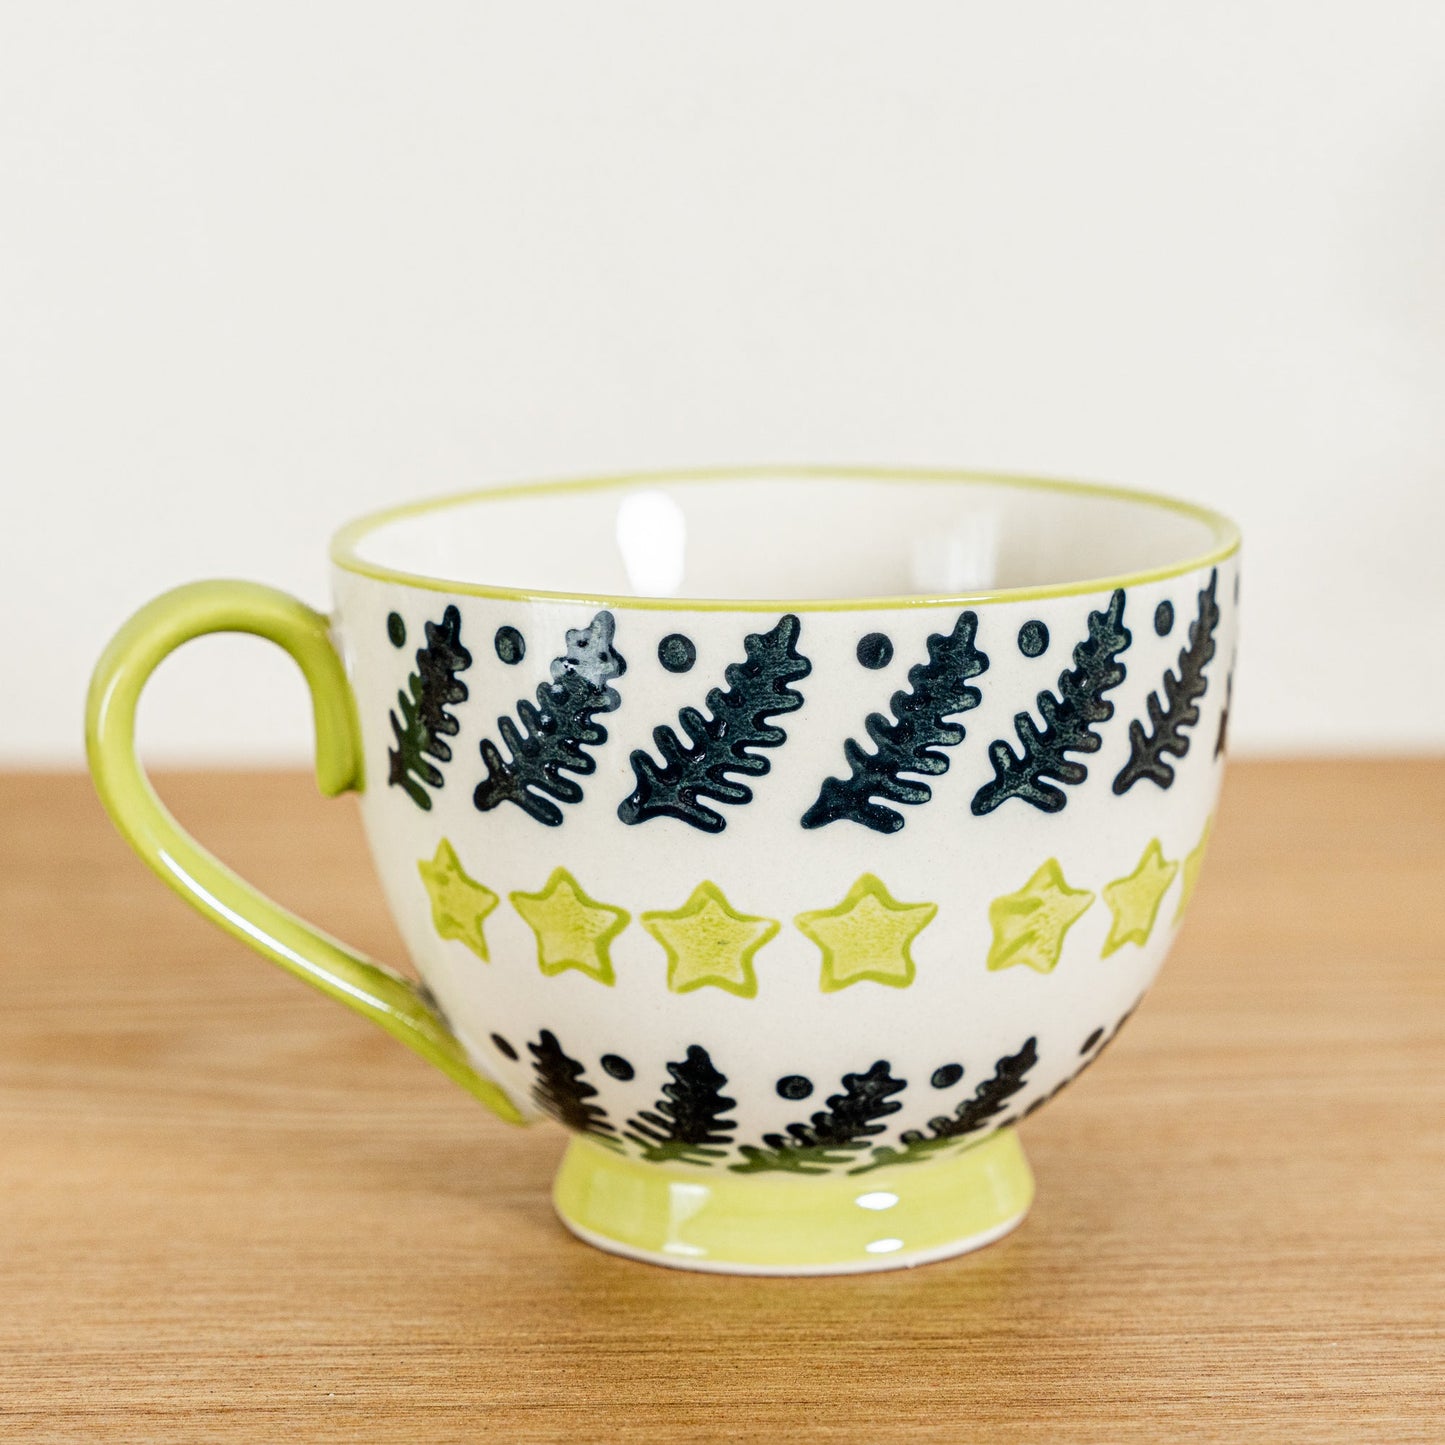 Seasonal Stamped Pattern Cafe Mug